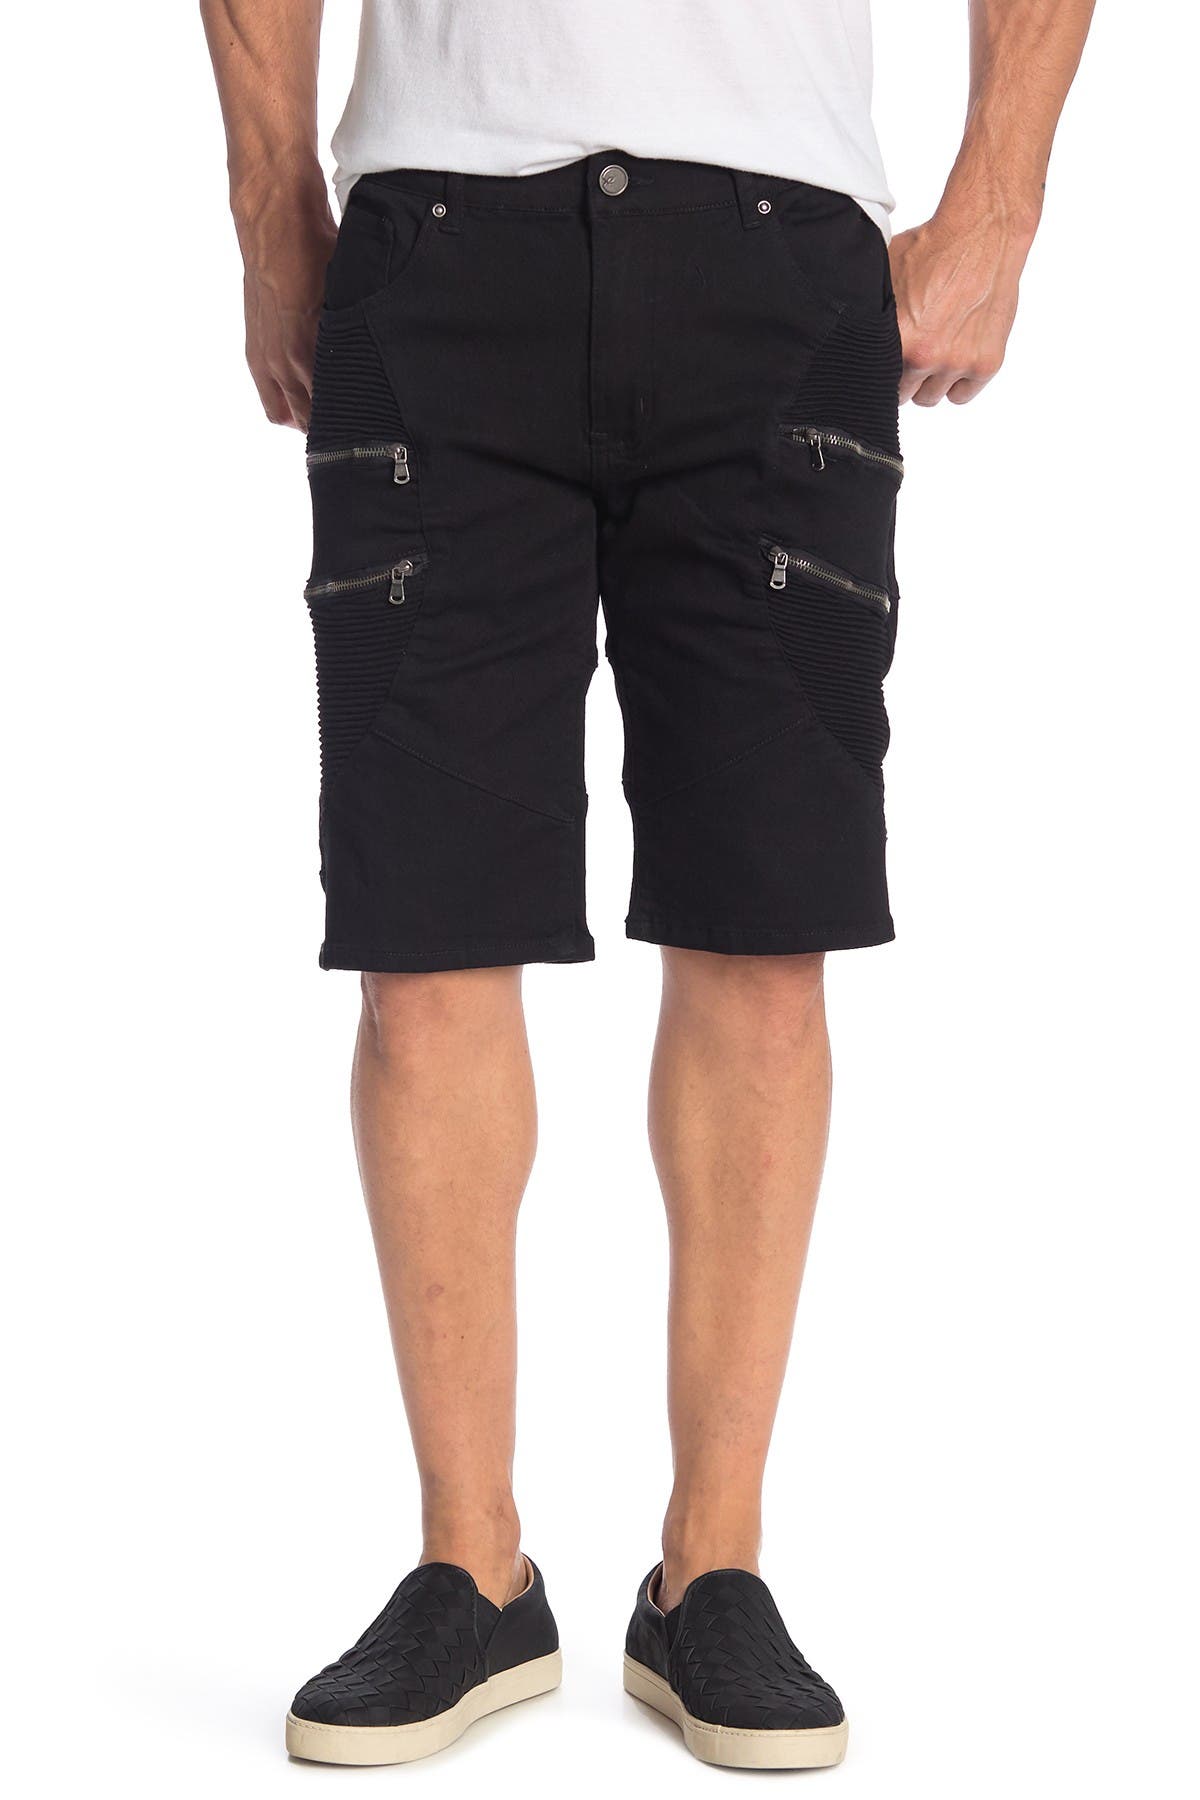 moto jean shorts